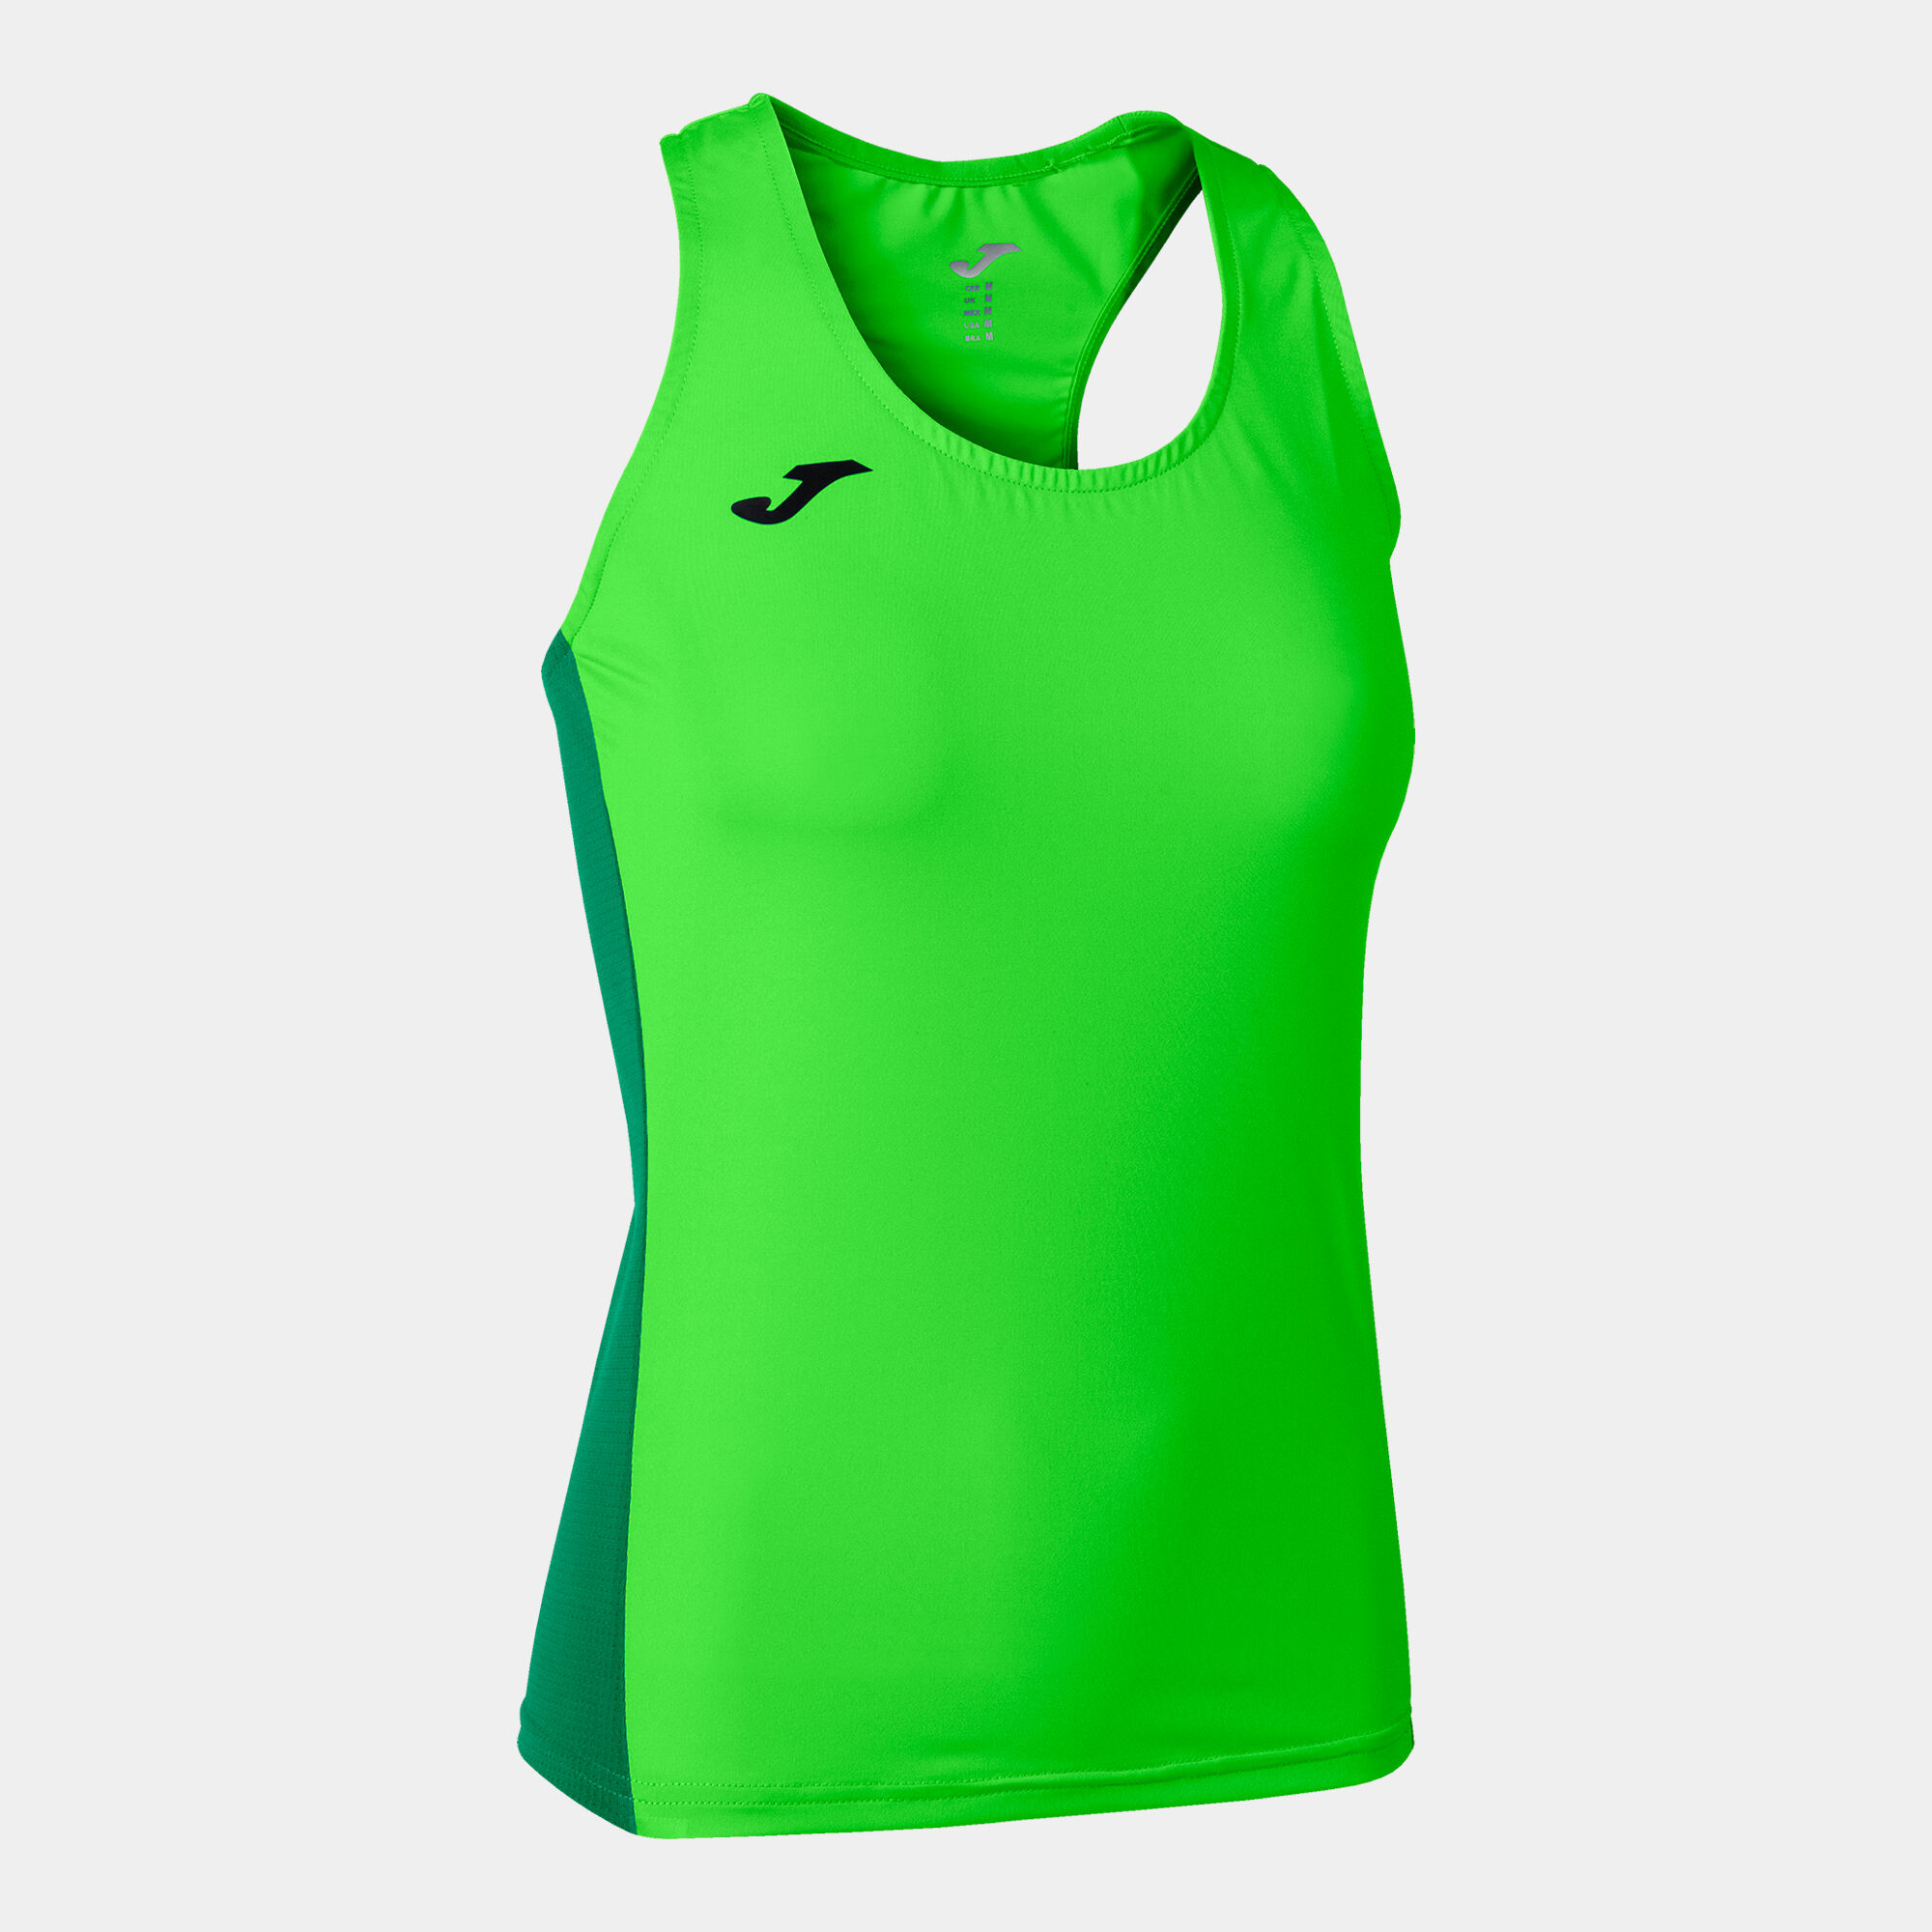 Camiseta tirantes mujer R-Winner verde flúor